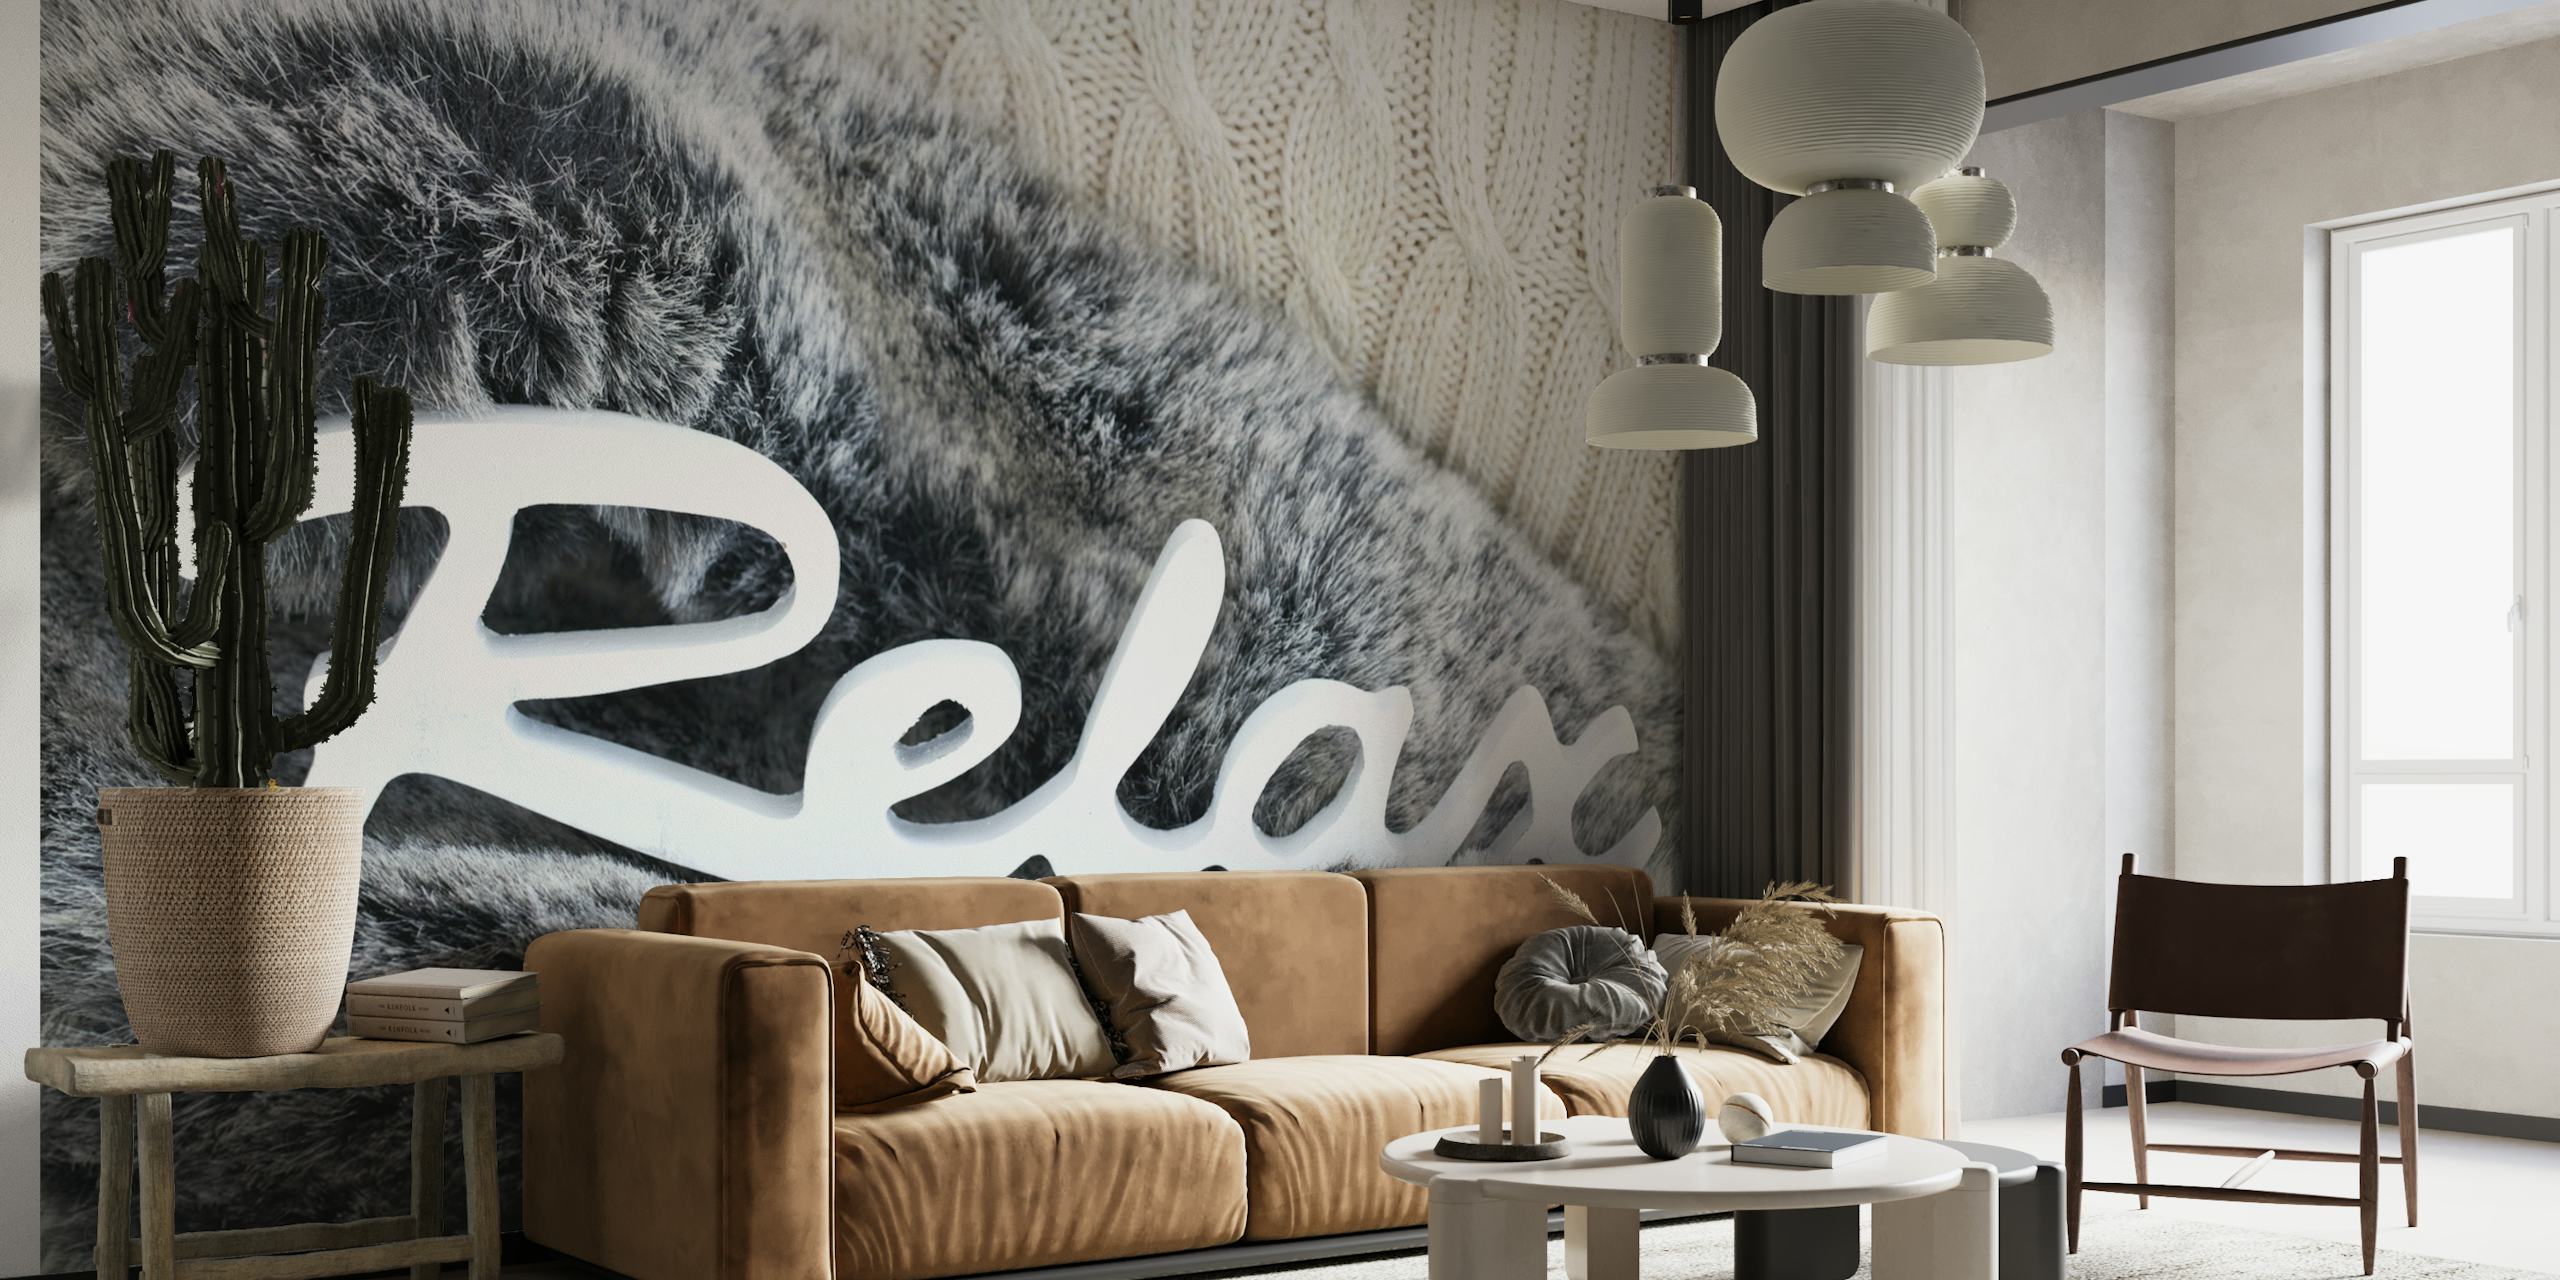 Papier peint mural avec une texture de fourrure simulée et le mot « Relax » dans une écriture élégante